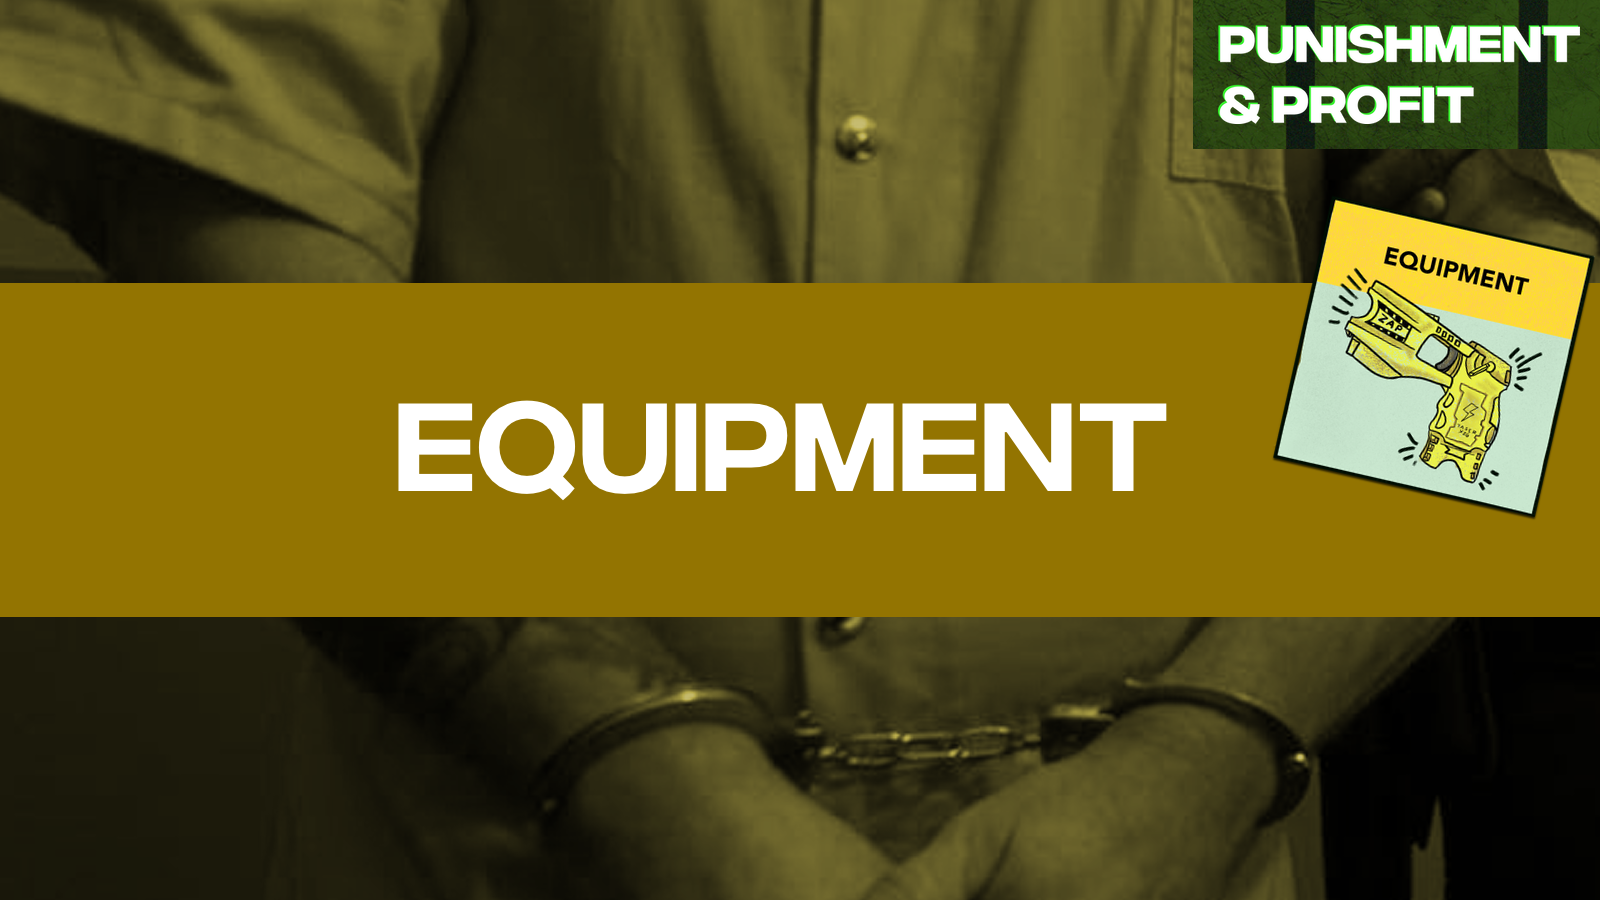 Punishment & Profit: Equipment